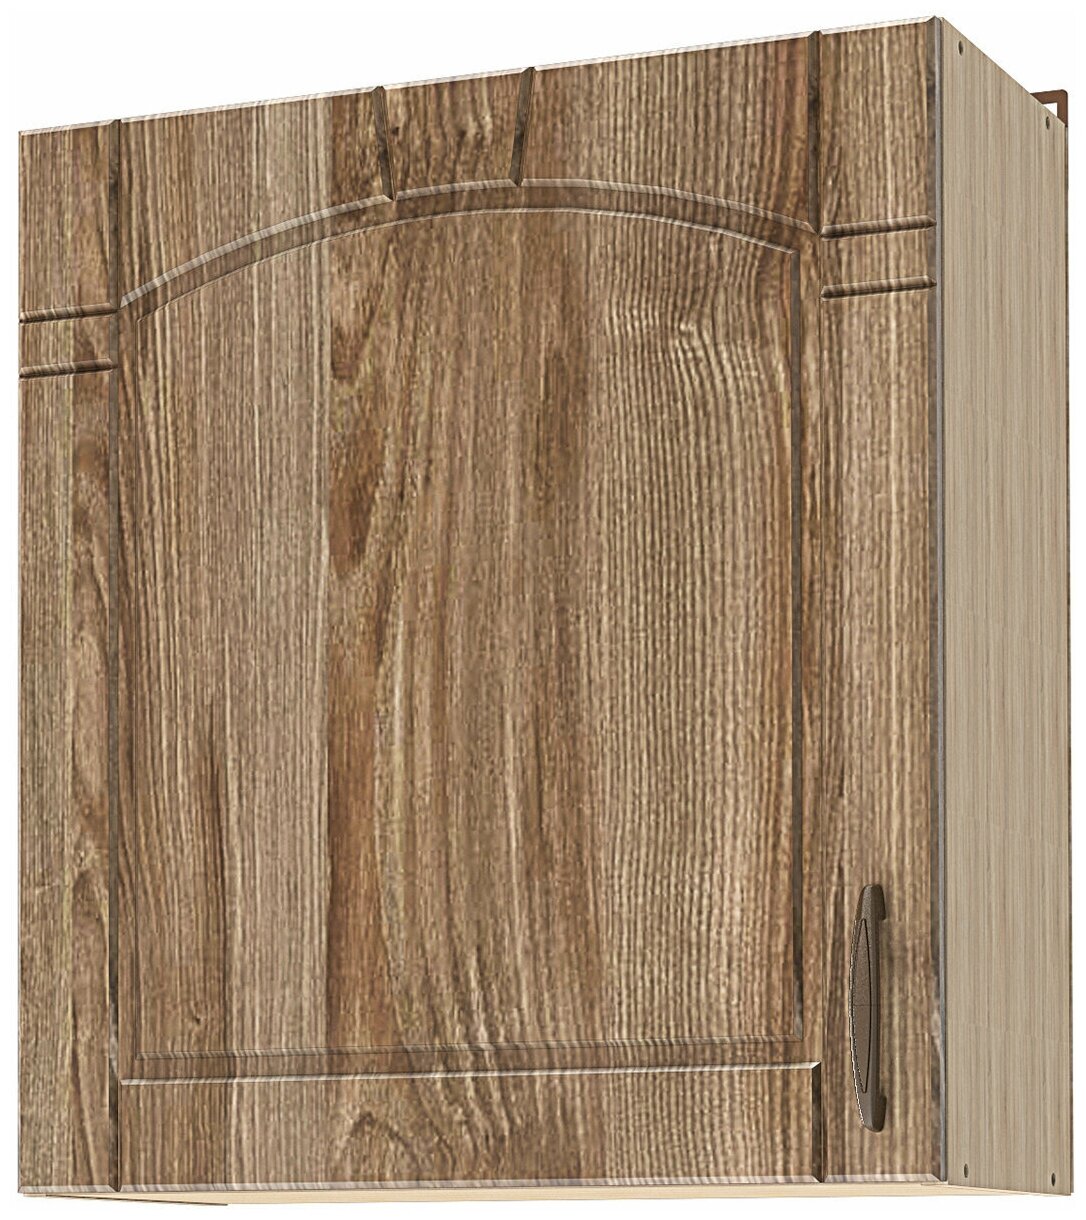 Кухонный модуль навесной шкаф Beneli камилла Каштан светлый/Дуб бардолино, фасады МДФ, 60х29х68см, 1шт.